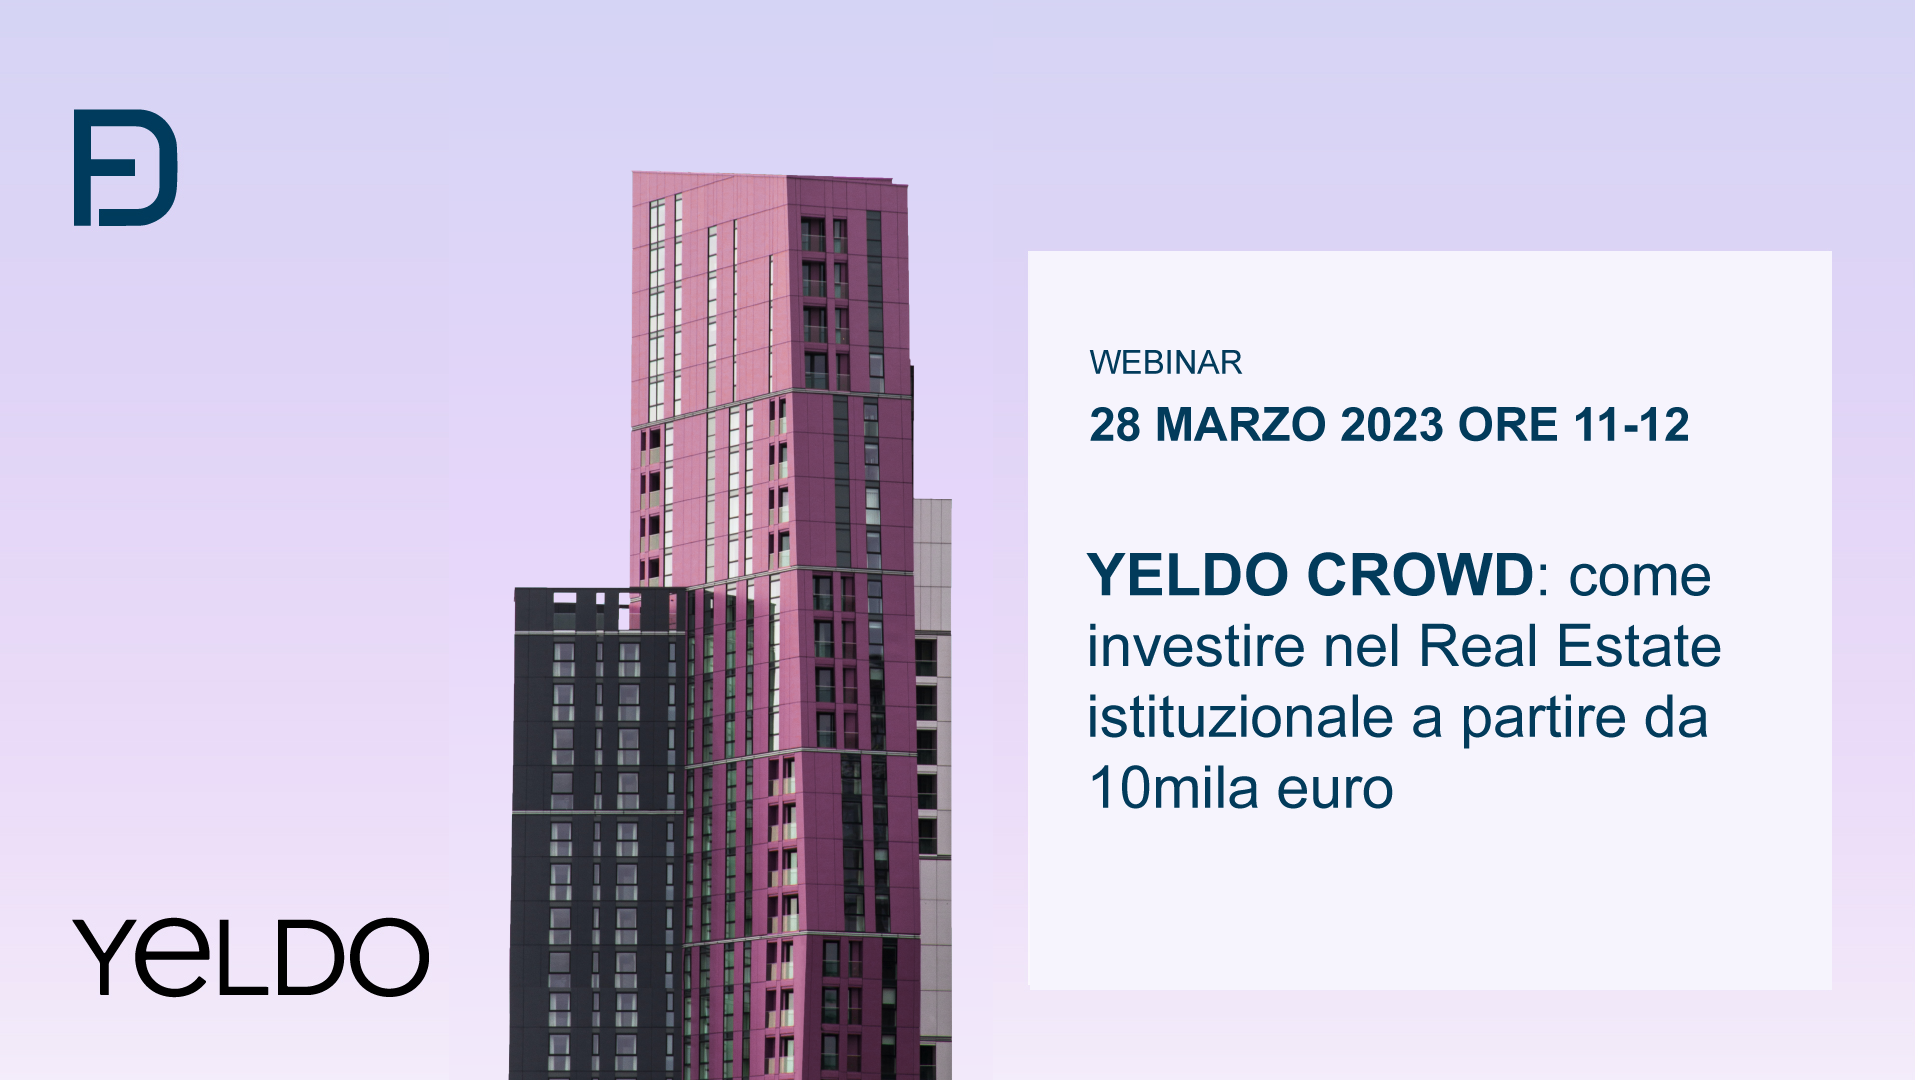 YELDO CROWD: come investire nel Real Estate istituzionale a partire da 10mila euro